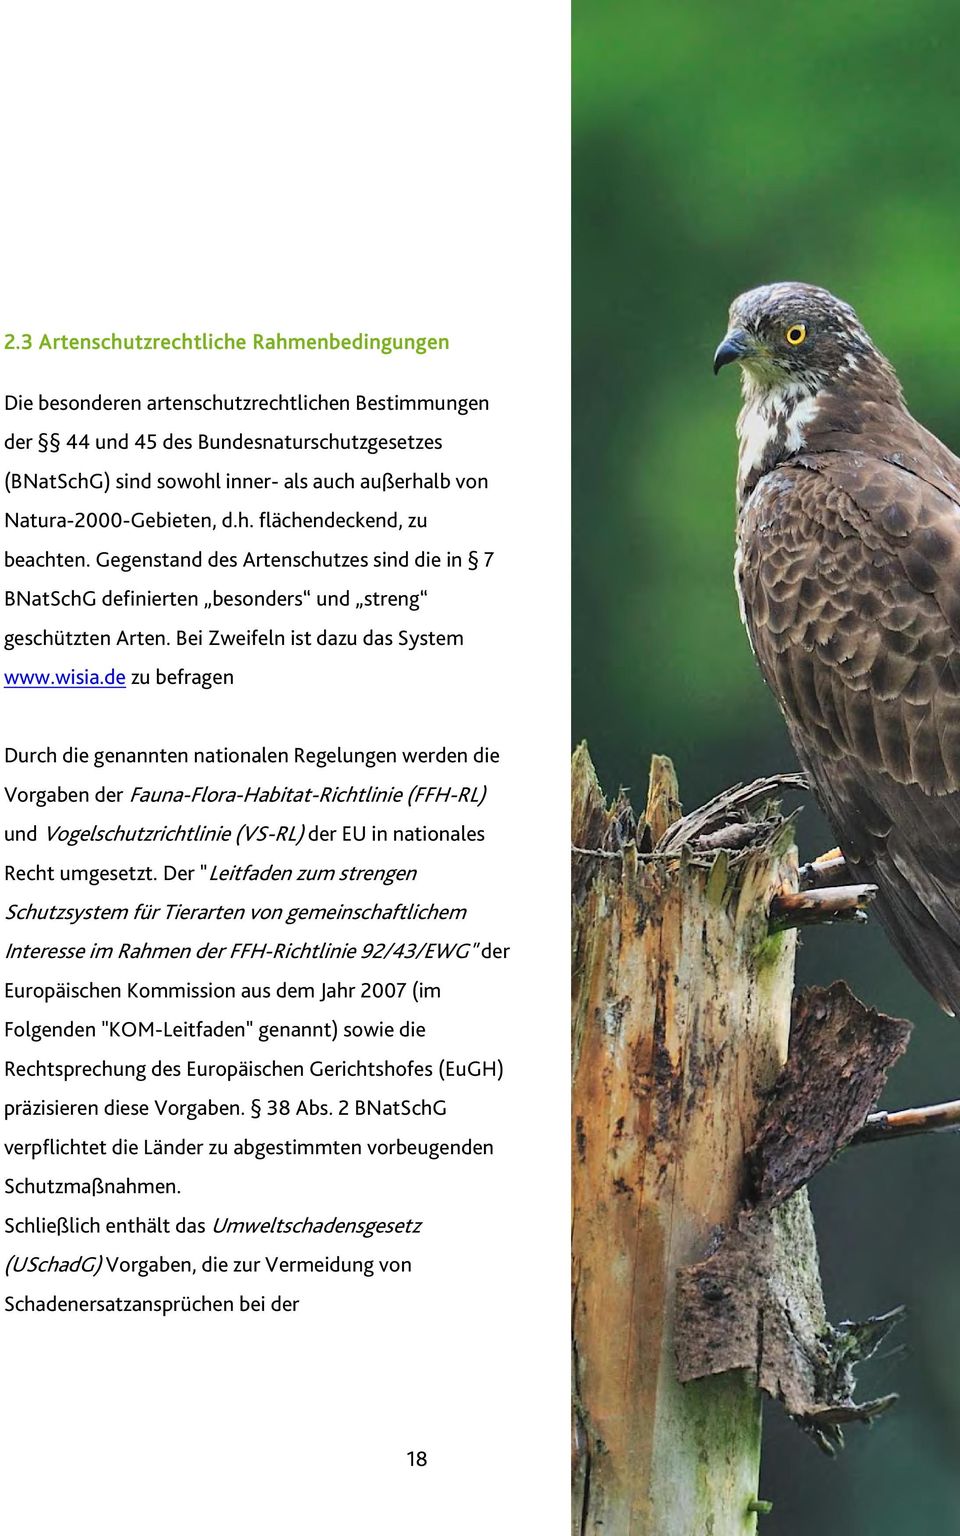 wisia.de zu befragen Durch die genannten nationalen Regelungen werden die Vorgaben der Fauna-Flora-Habitat-Richtlinie (FFH-RL) und Vogelschutzrichtlinie (VS-RL) der EU in nationales Recht umgesetzt.